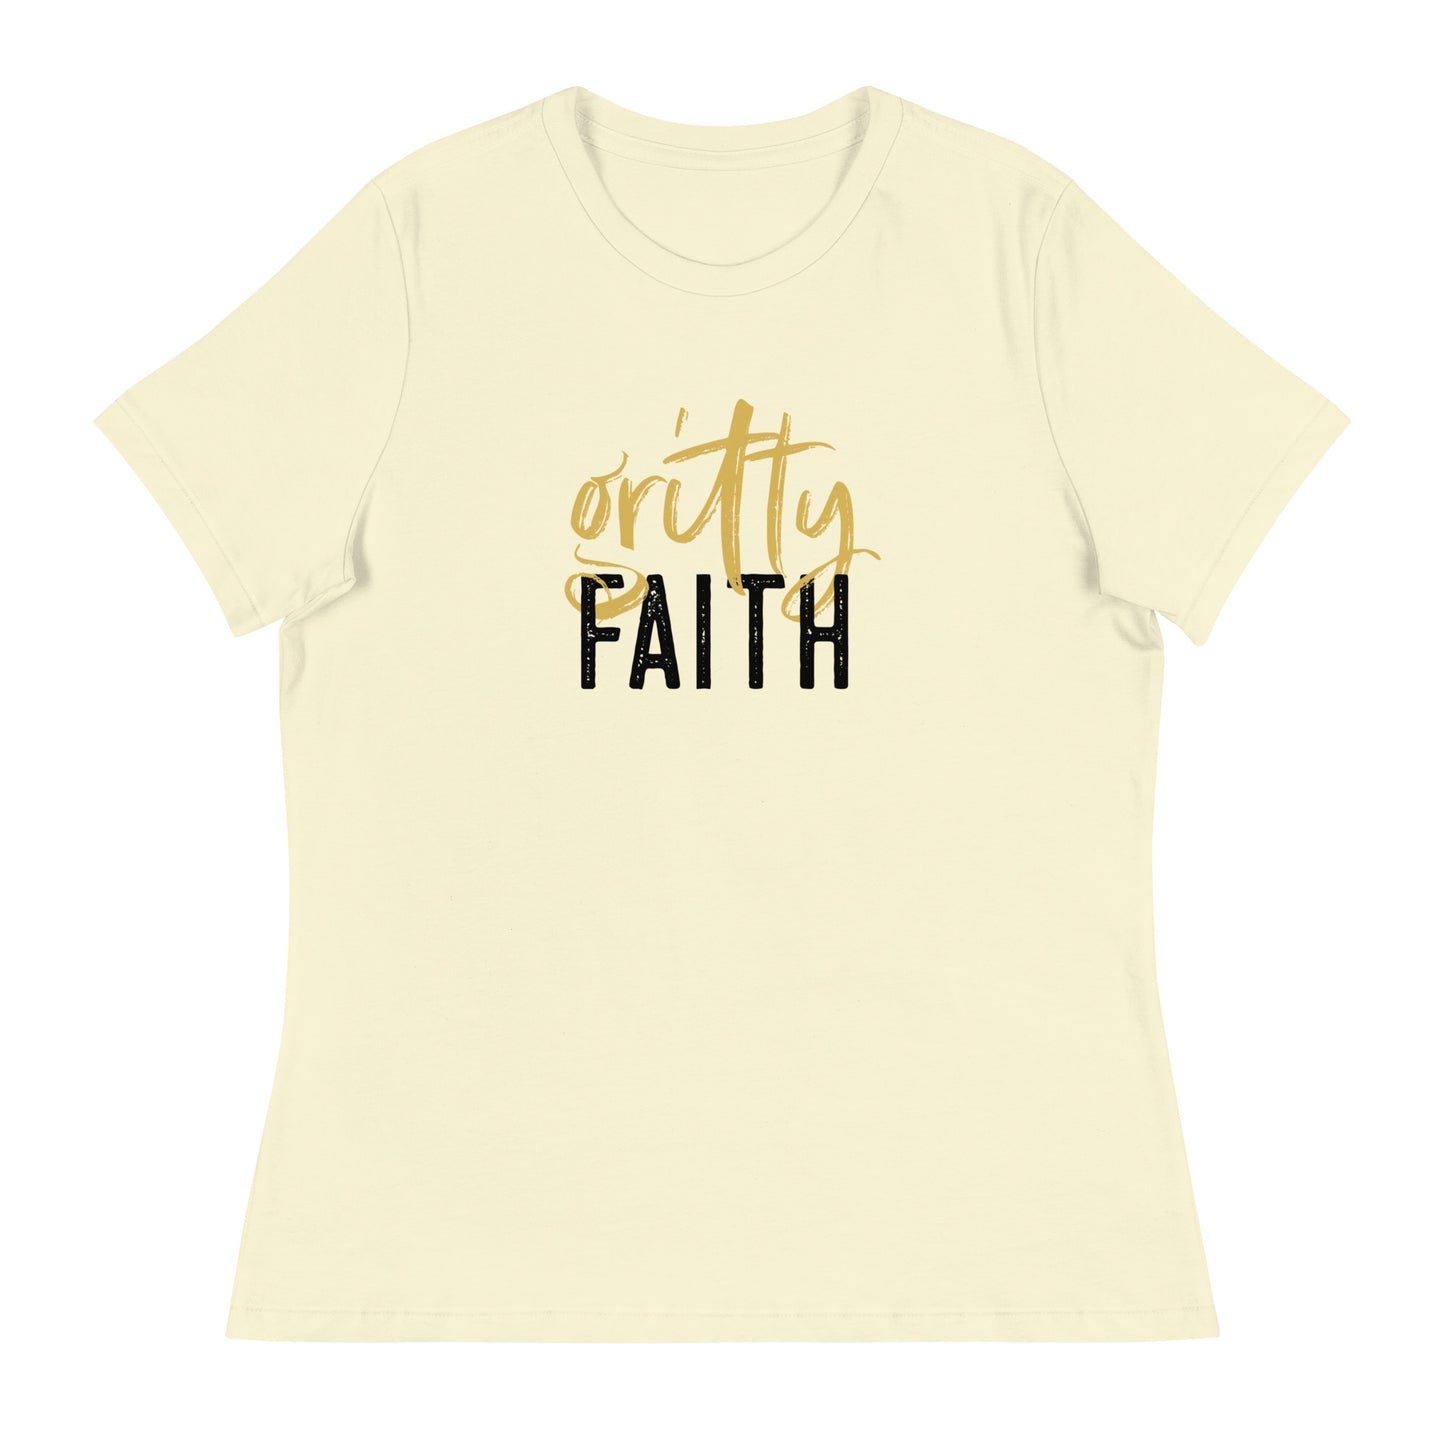 Gritty Faith Women's Relaxed T-Shirt